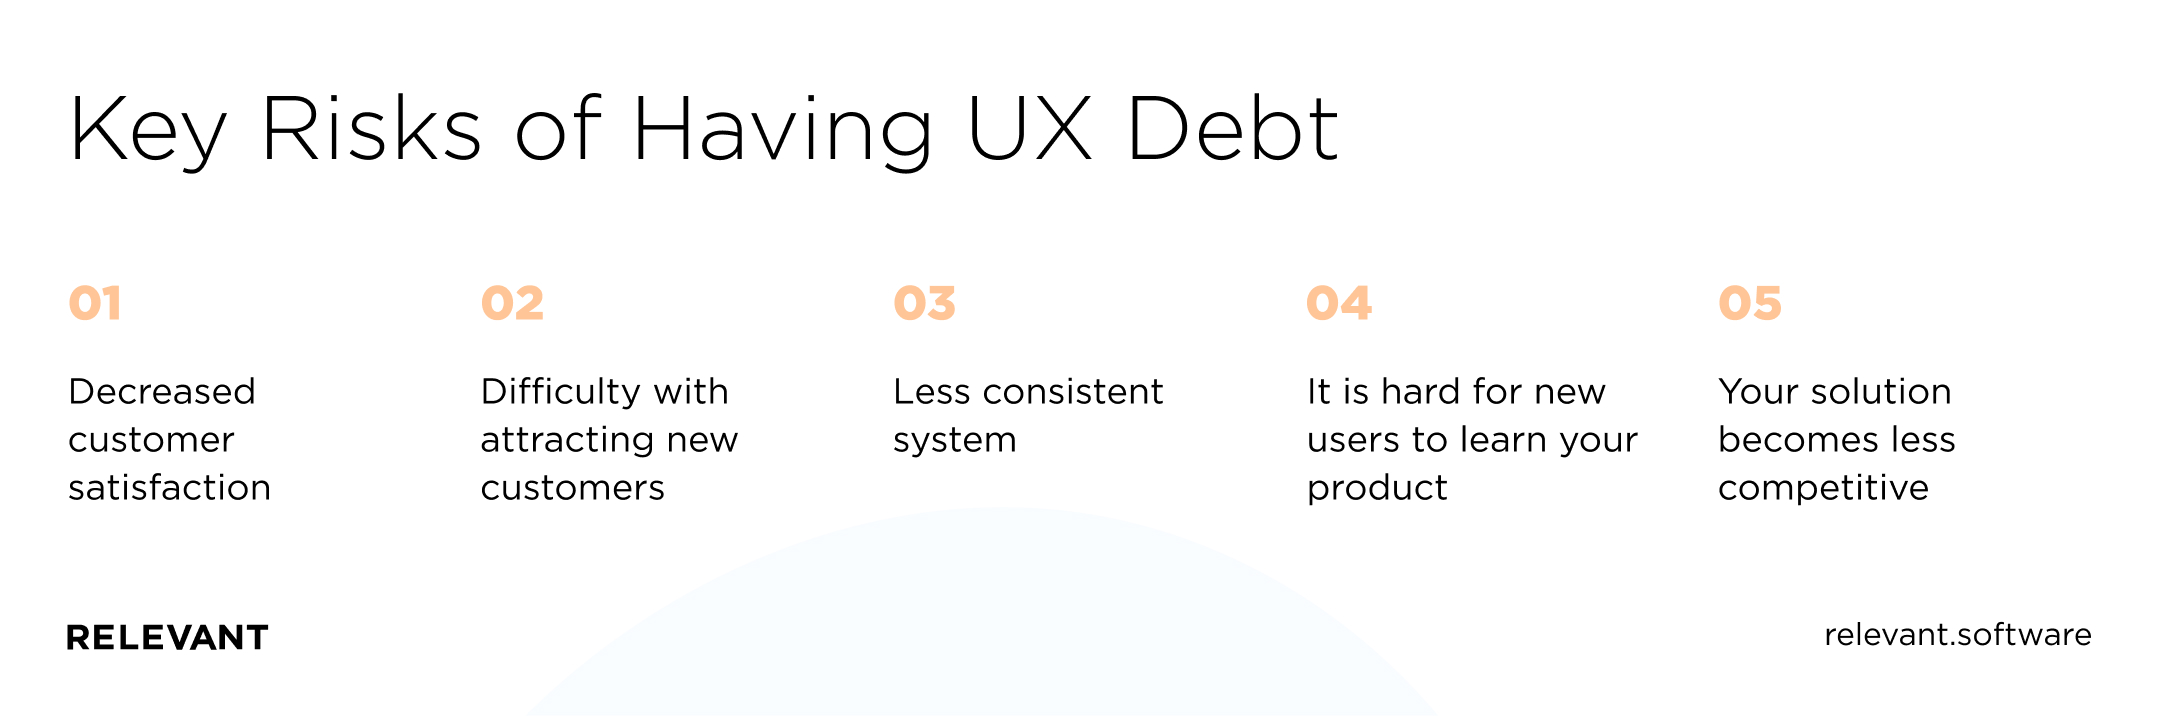 Key Risks of Having UX Debt